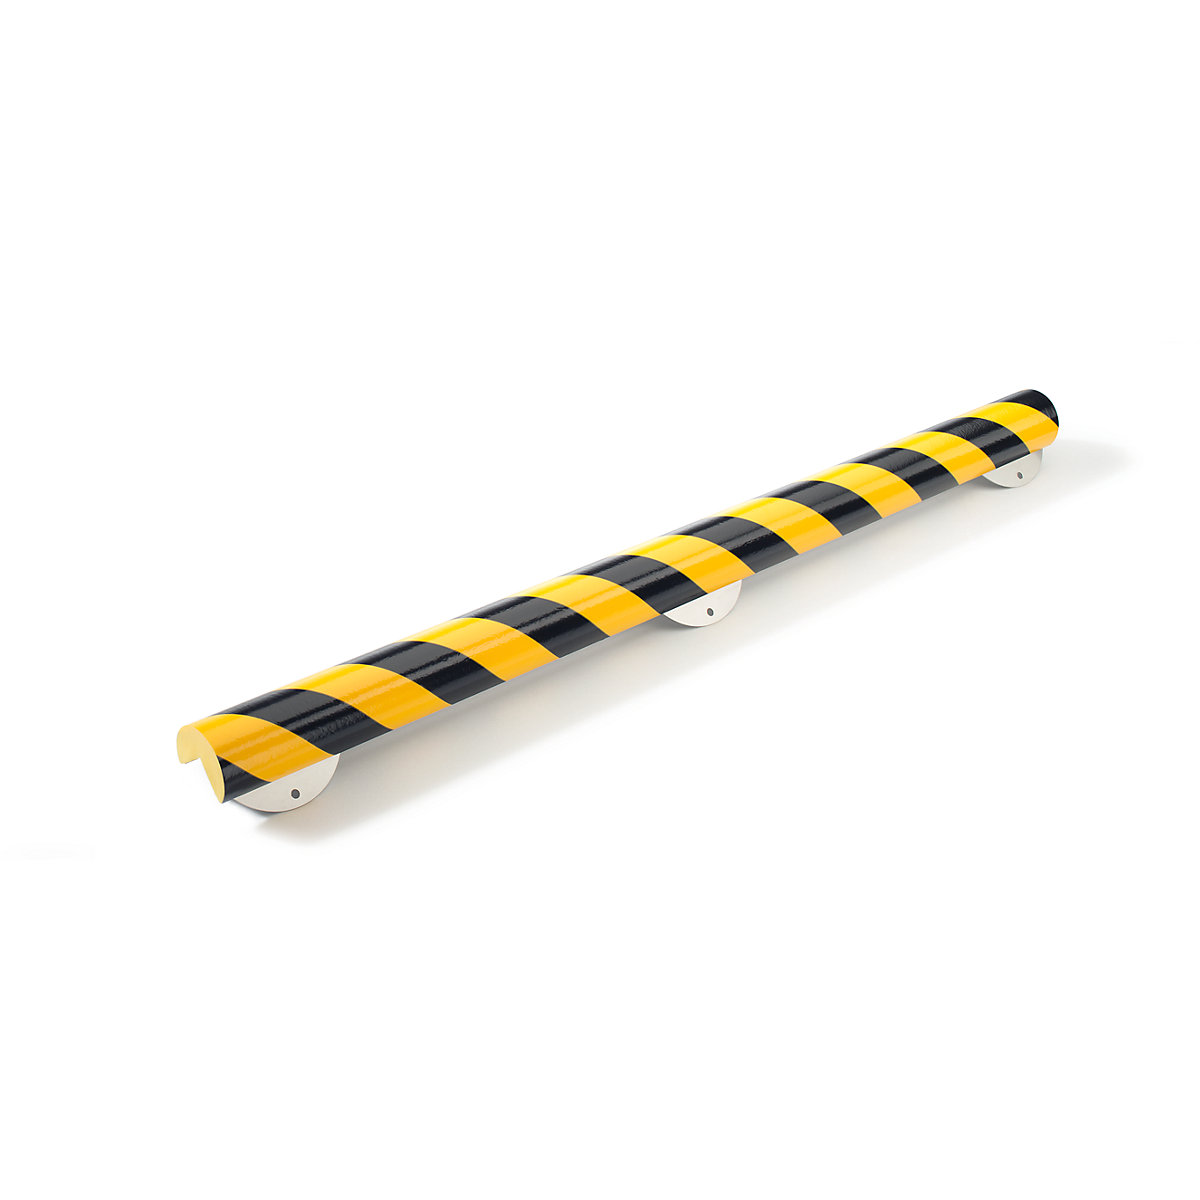 Proteção de cantos Knuffi® com calha de montagem – SHG, tipo A+, unidade de 1 m, preto/amarelo-12